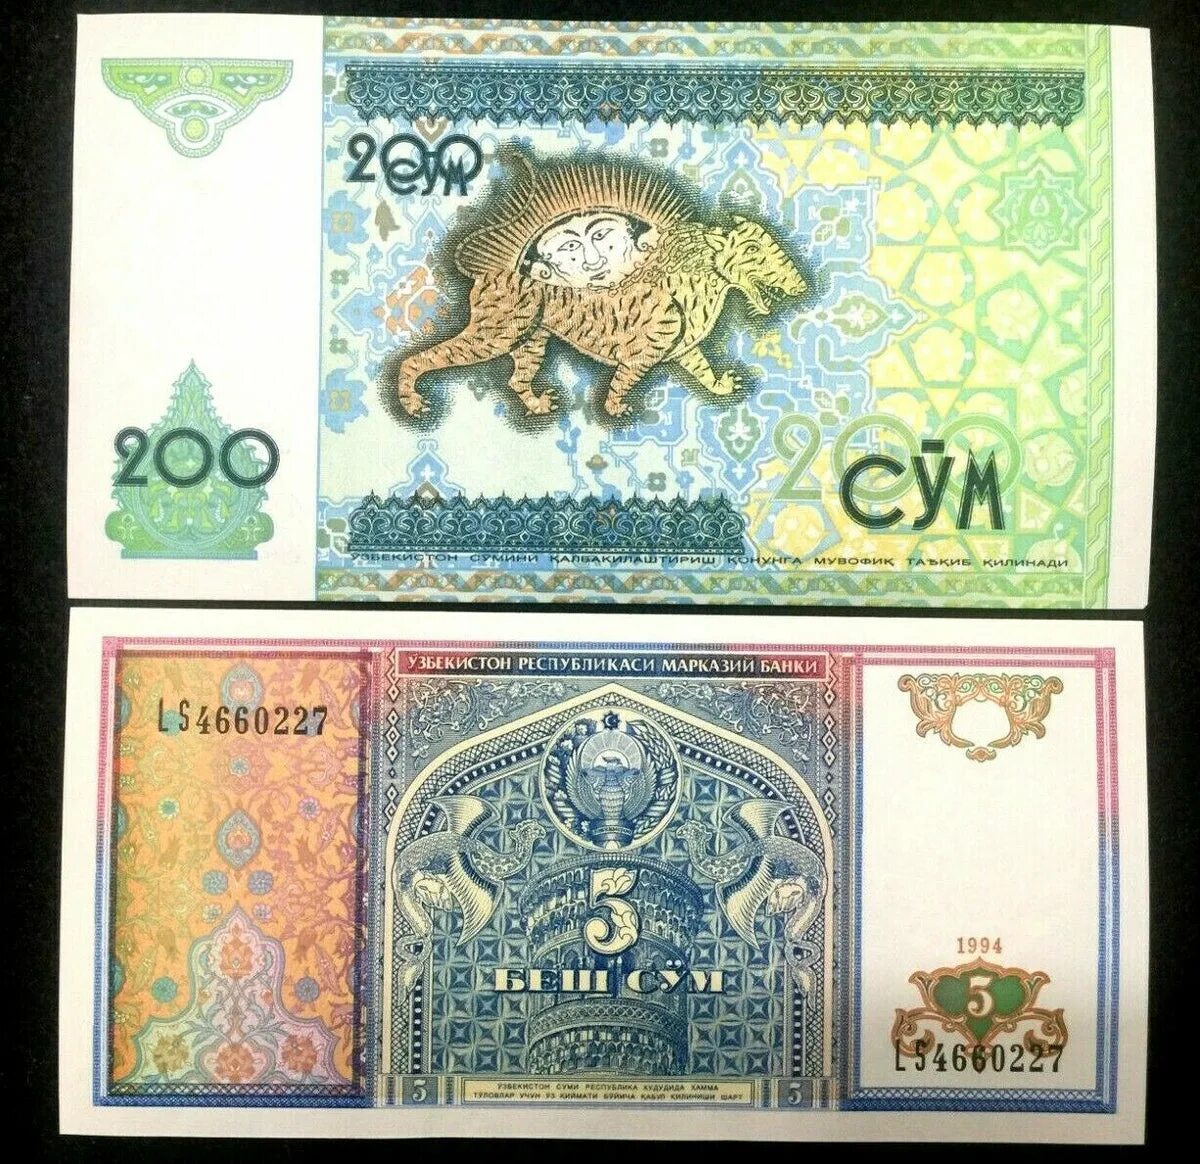 100sum 200 sum. Uzbek Banknotes. Банкноты суммы 400000 сум. 200 Сум в рублях. Суммы купюры